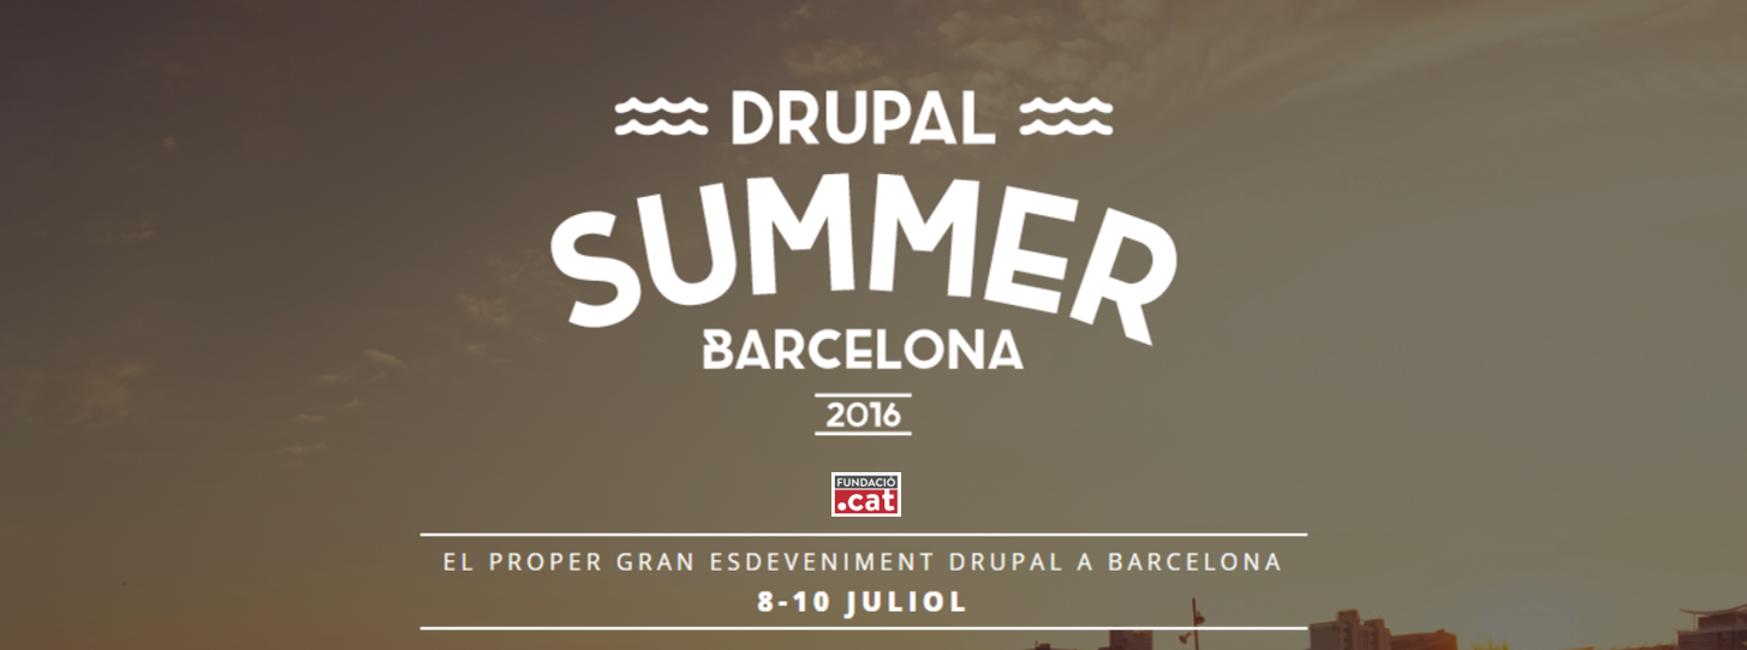 Drupal Summer Barcelona